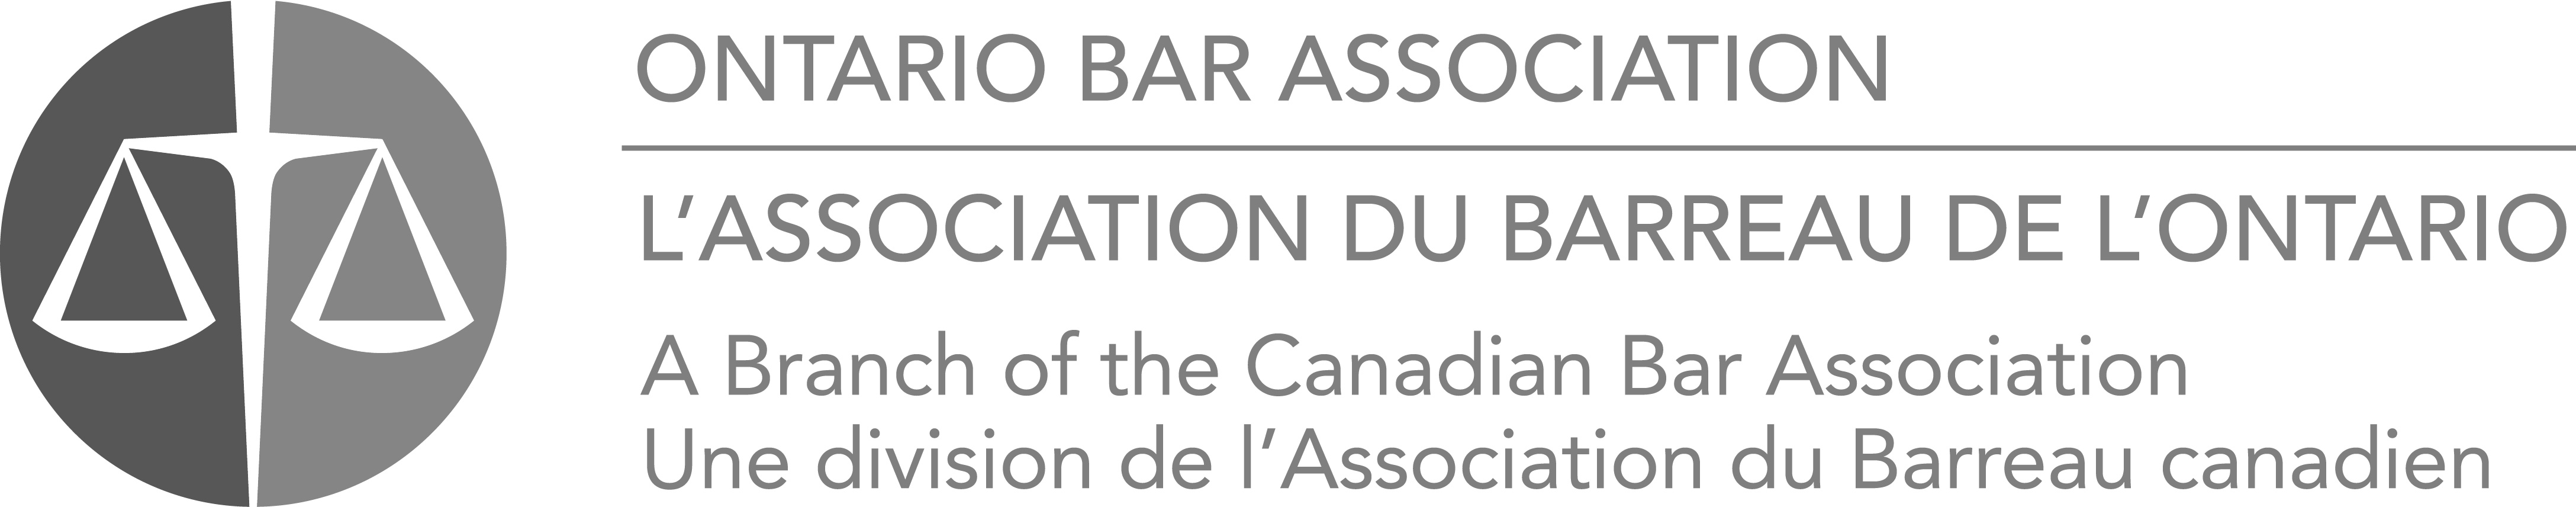 ontario-bar-association-logo-1